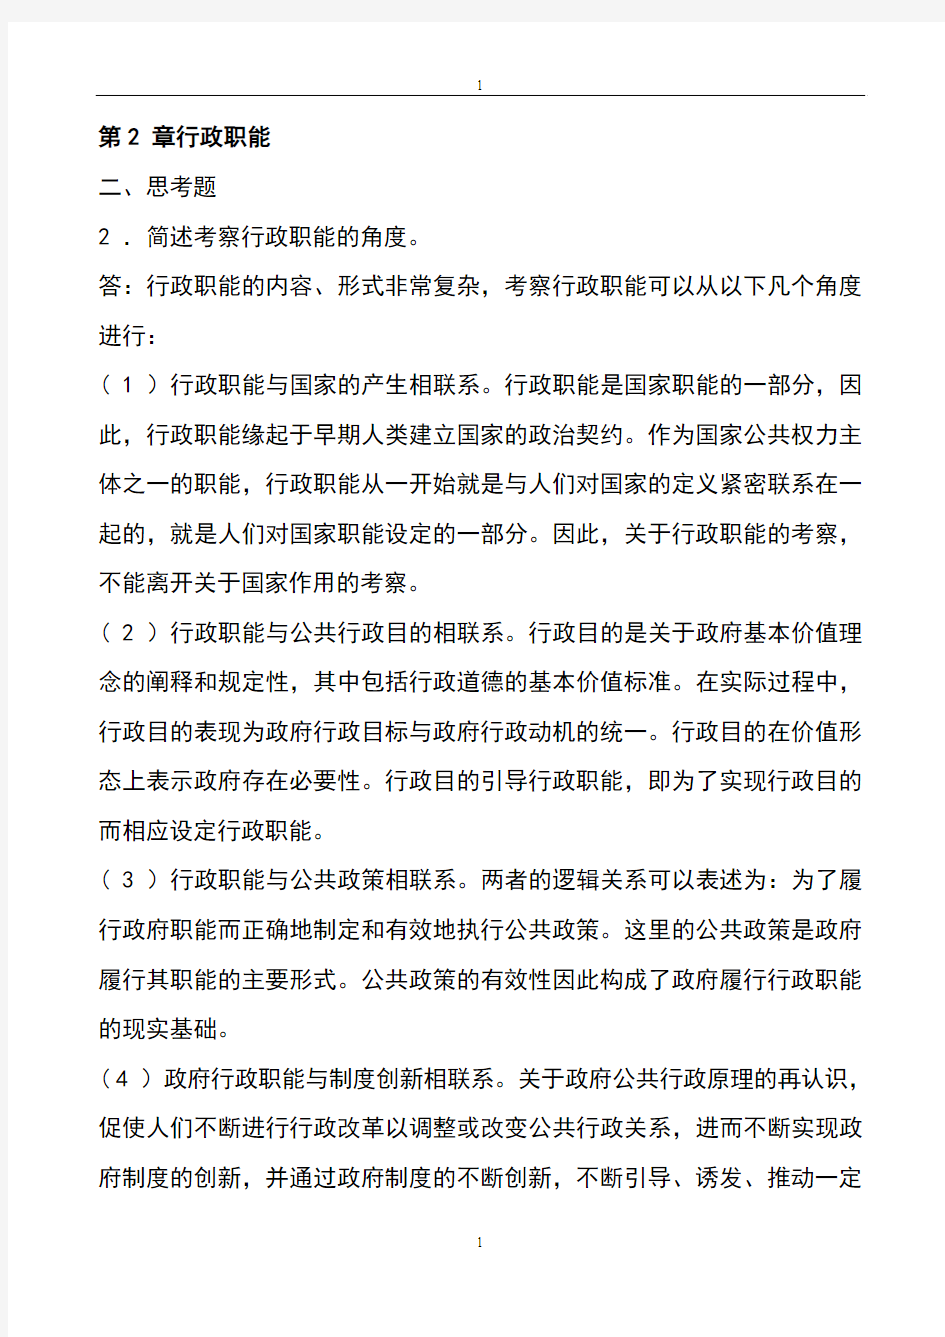 张国庆公共行政学(第三版)课后习题讲解第2章行政职能